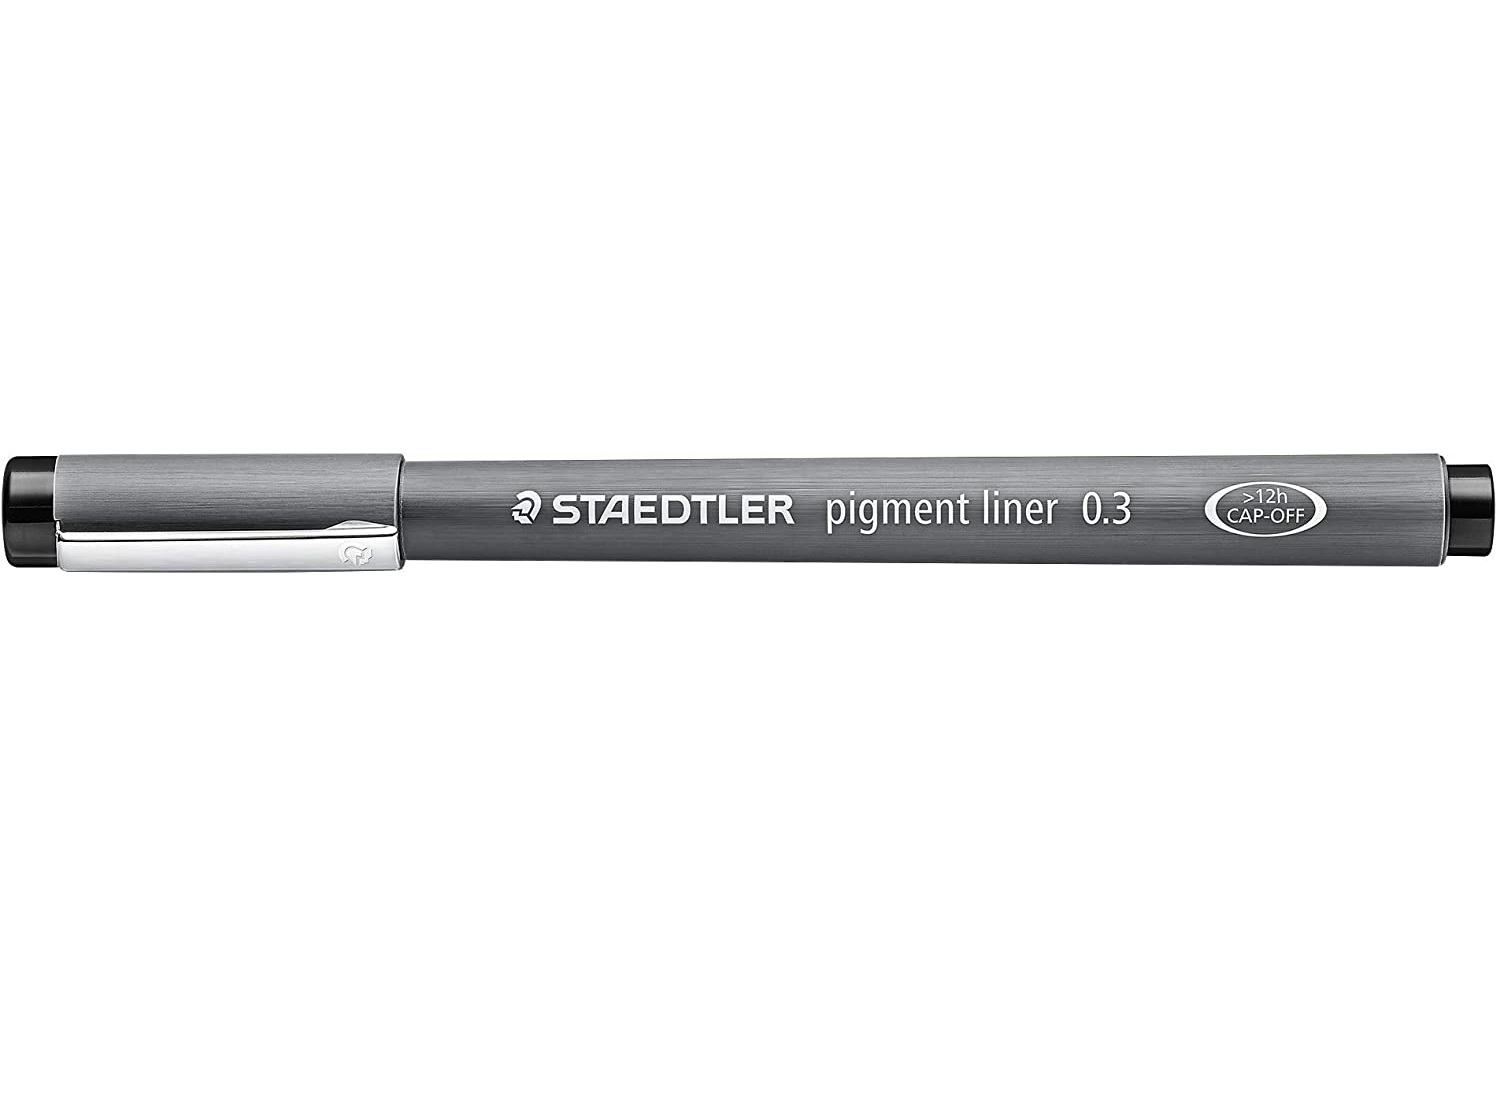 Staedtler Pigment Liner, 0.3 mm, Black Ink